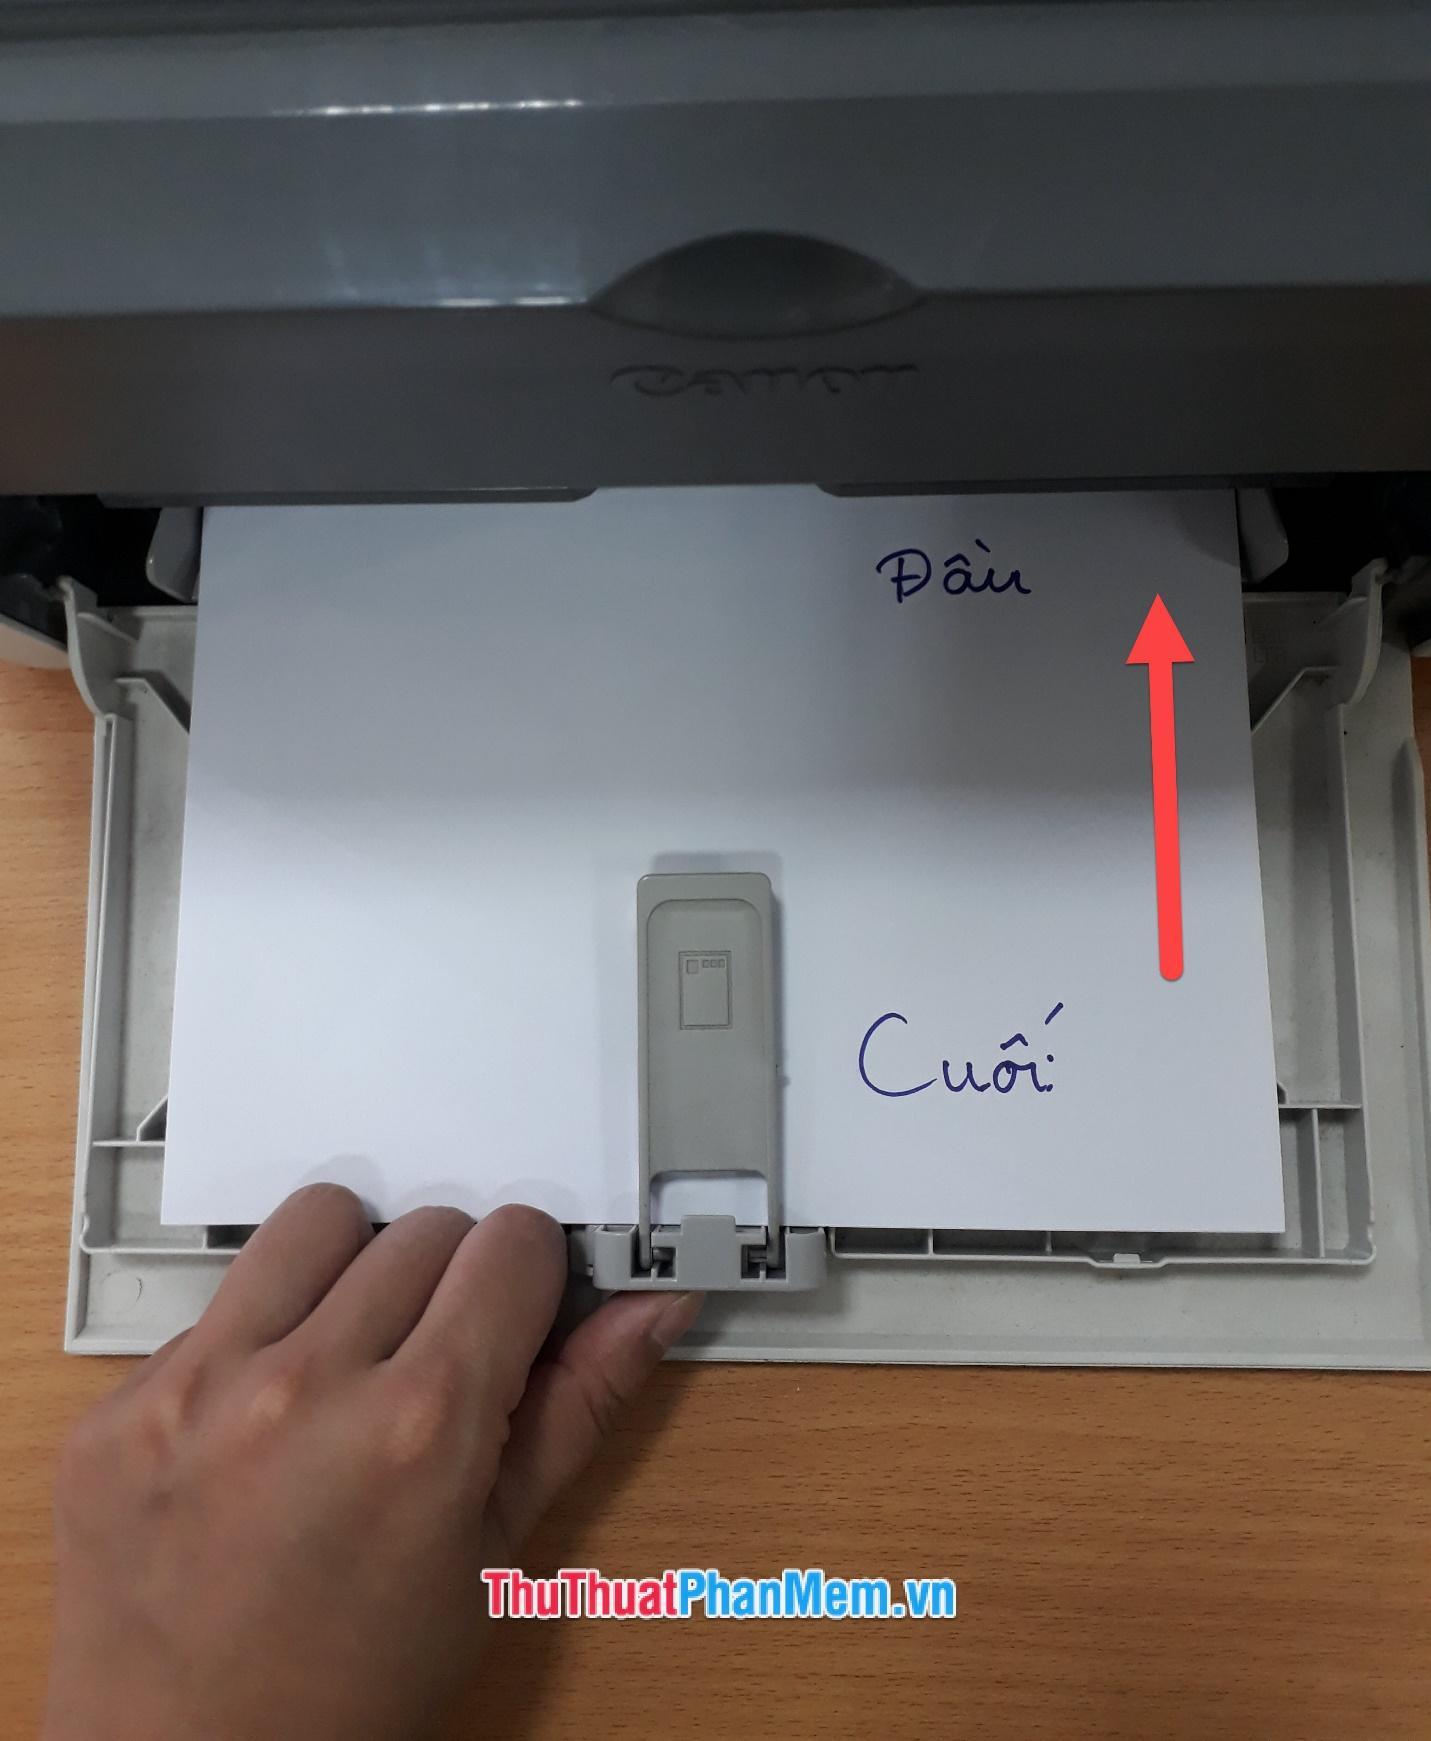 Khi các bạn đặt giấy in vào thì nên chú ý đầu của tờ giấy được đưa vào phía bên trong và đặt ngửa lên